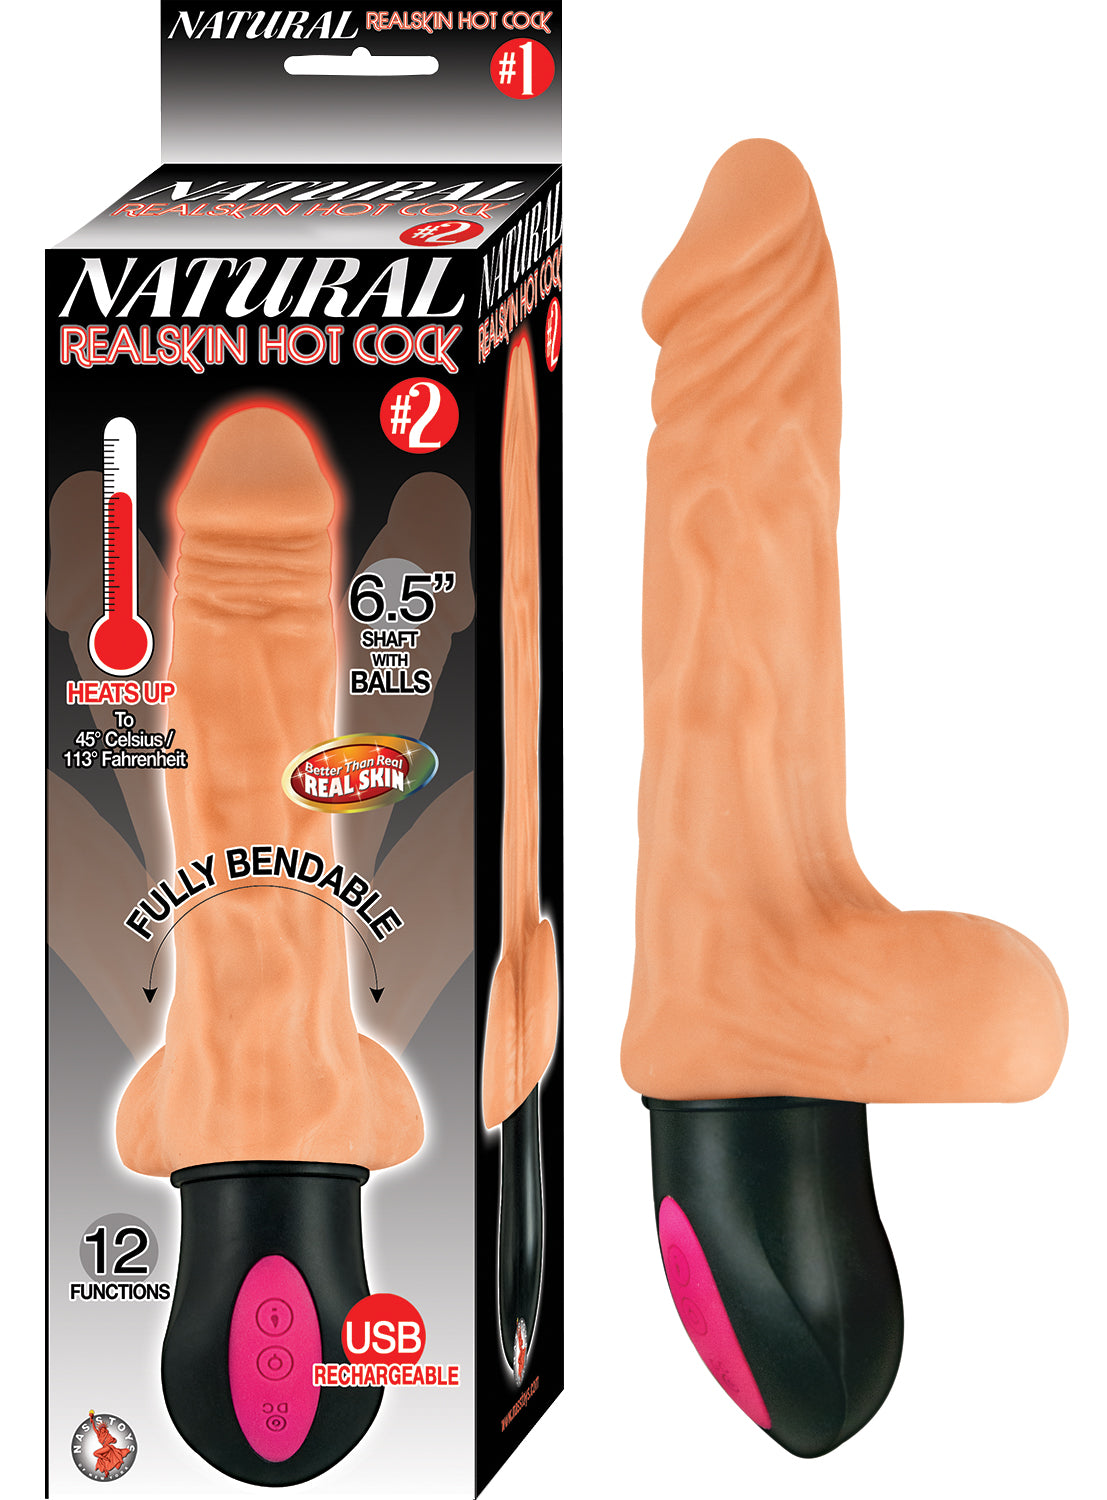 Natural Realskin Hot Cock #2 - Flesh